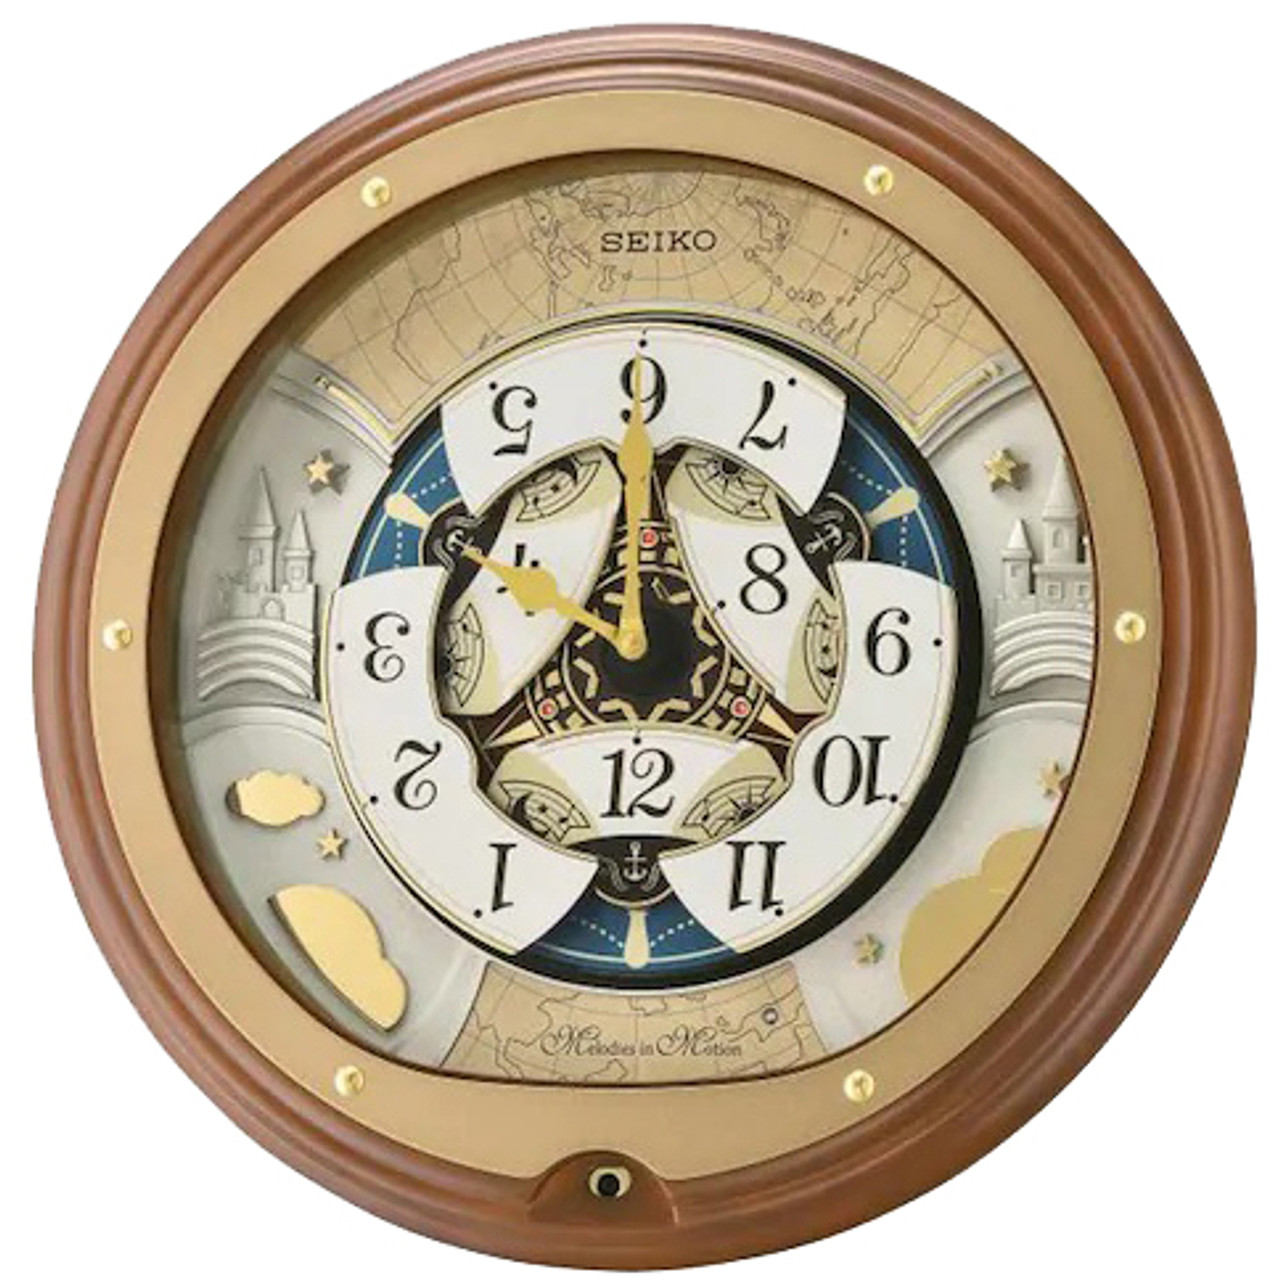 Механизм для настенных часов Seiko. Часы атлас. Часы for Motion. Часы "Атлант". Апрель 2021 часы